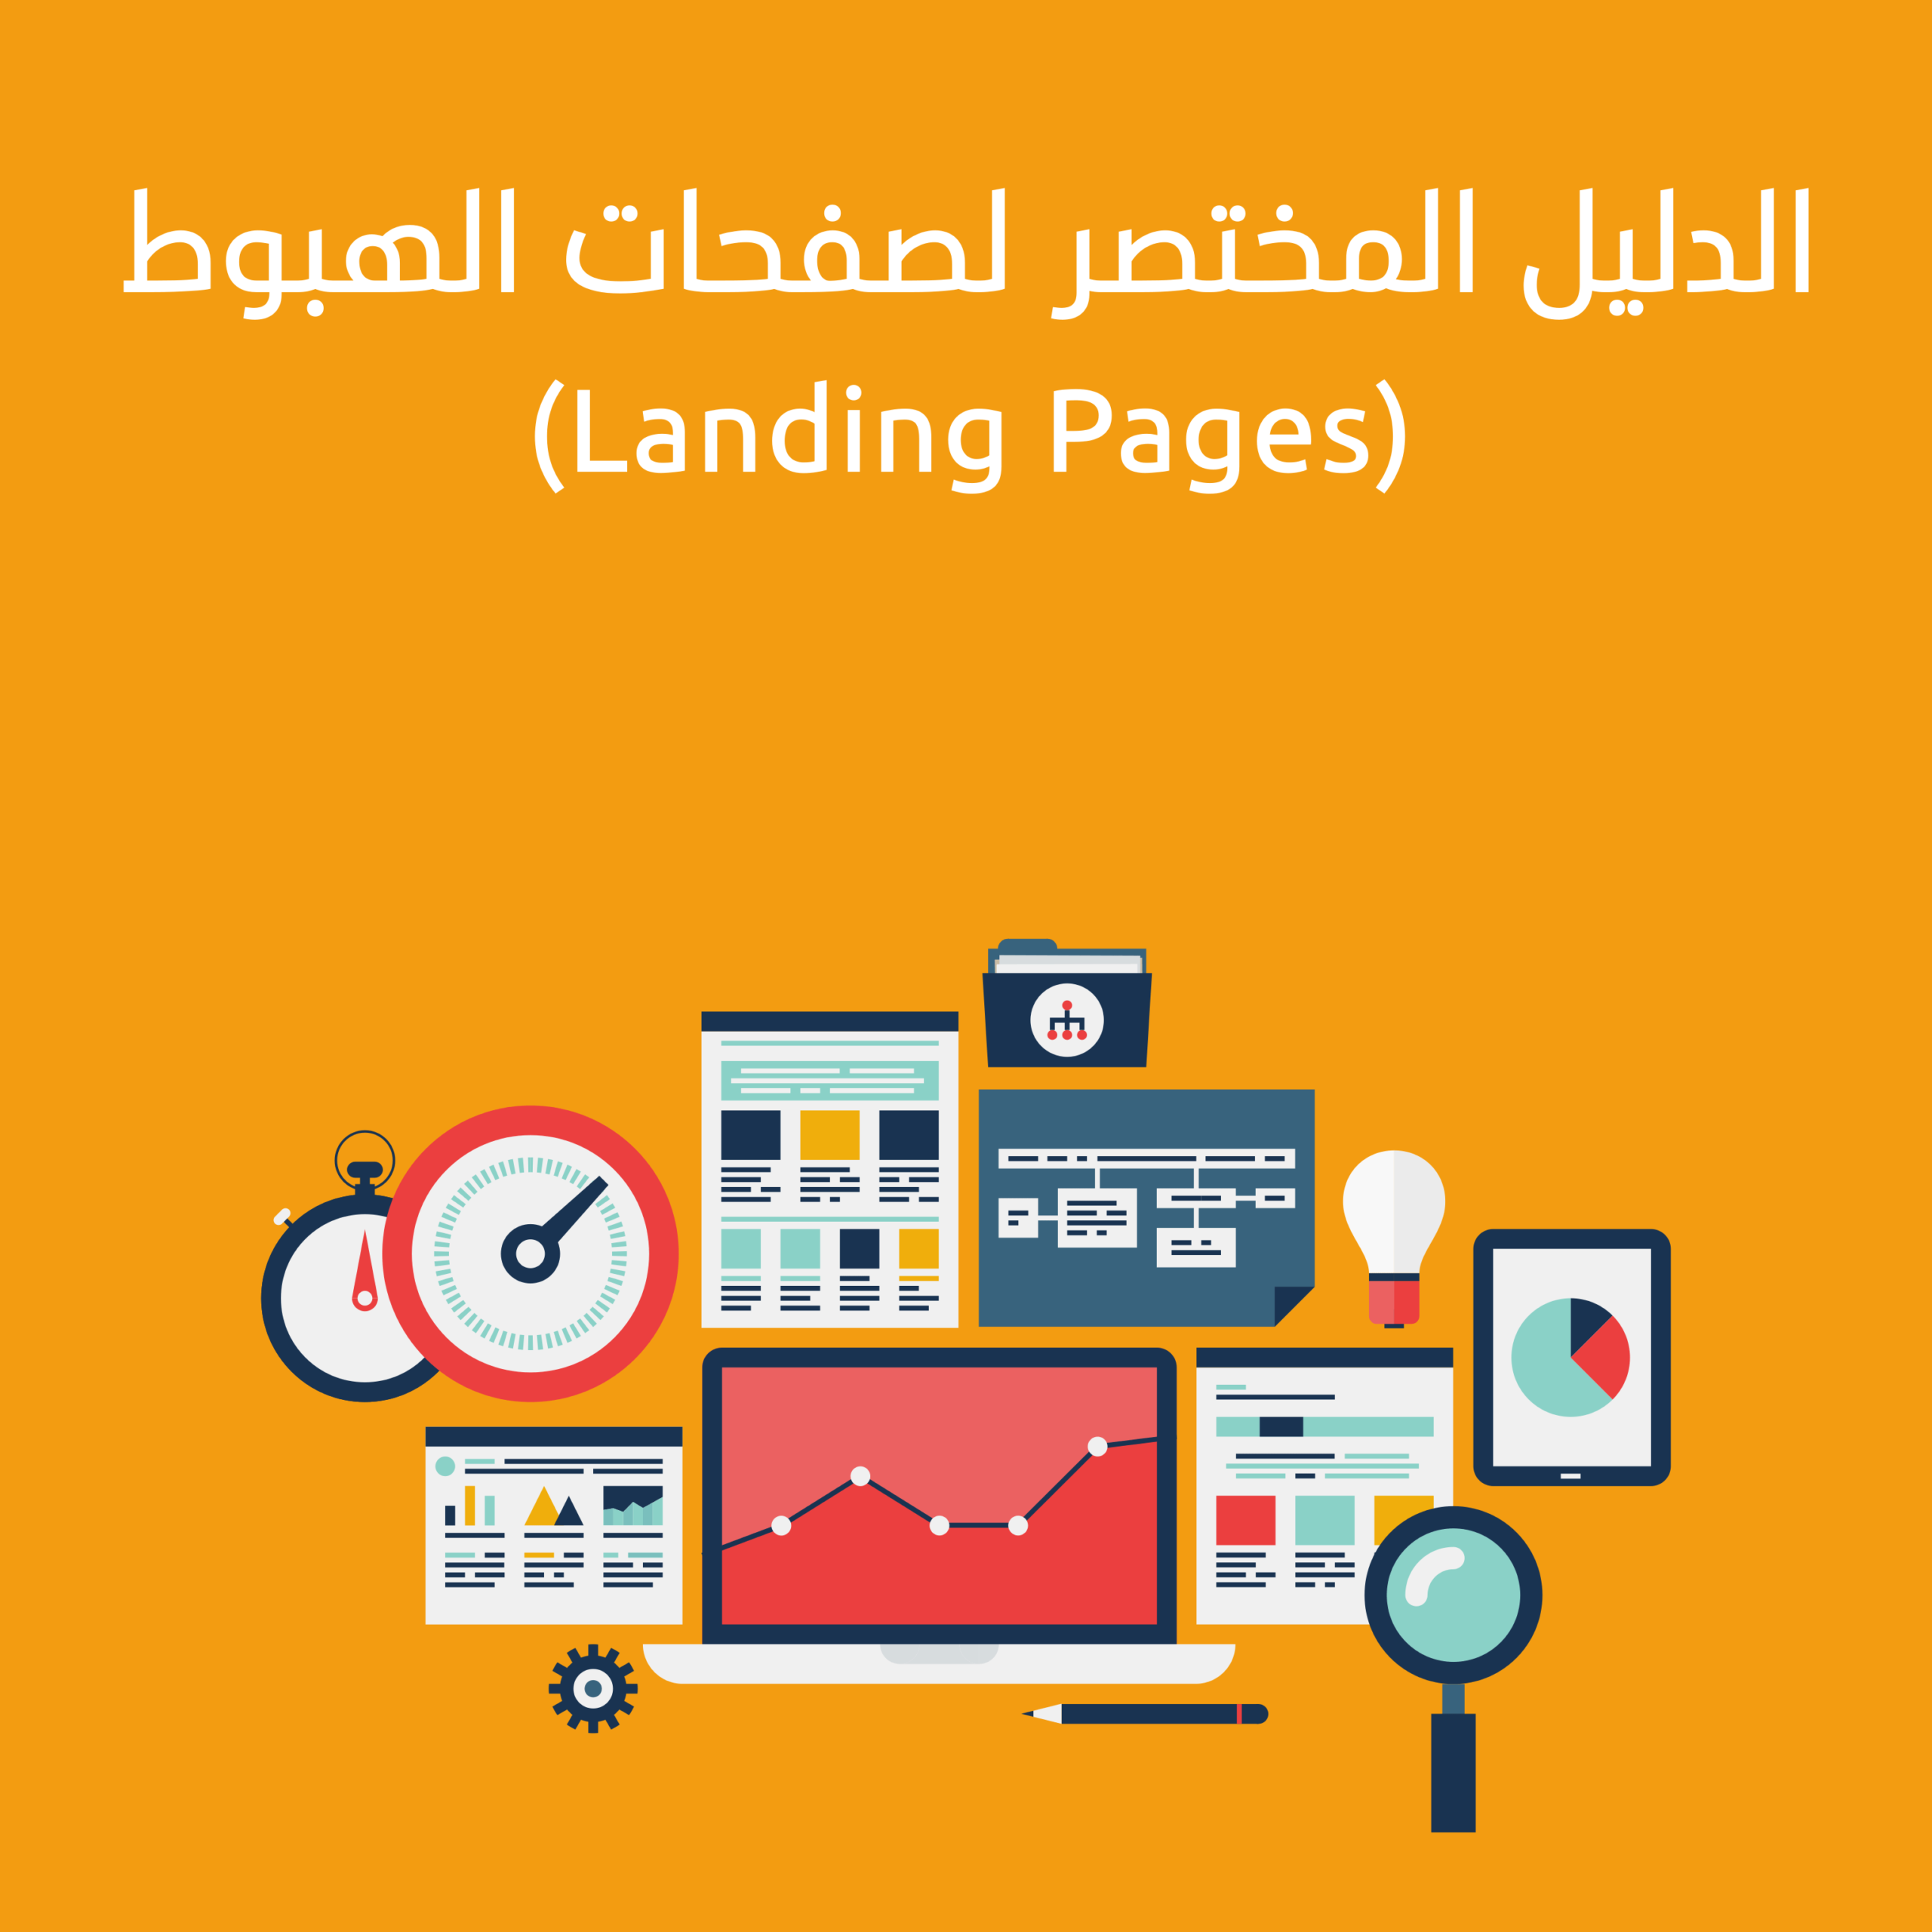 مراجعة الدليل المختصر لصفحات الهبوط Landing Pages